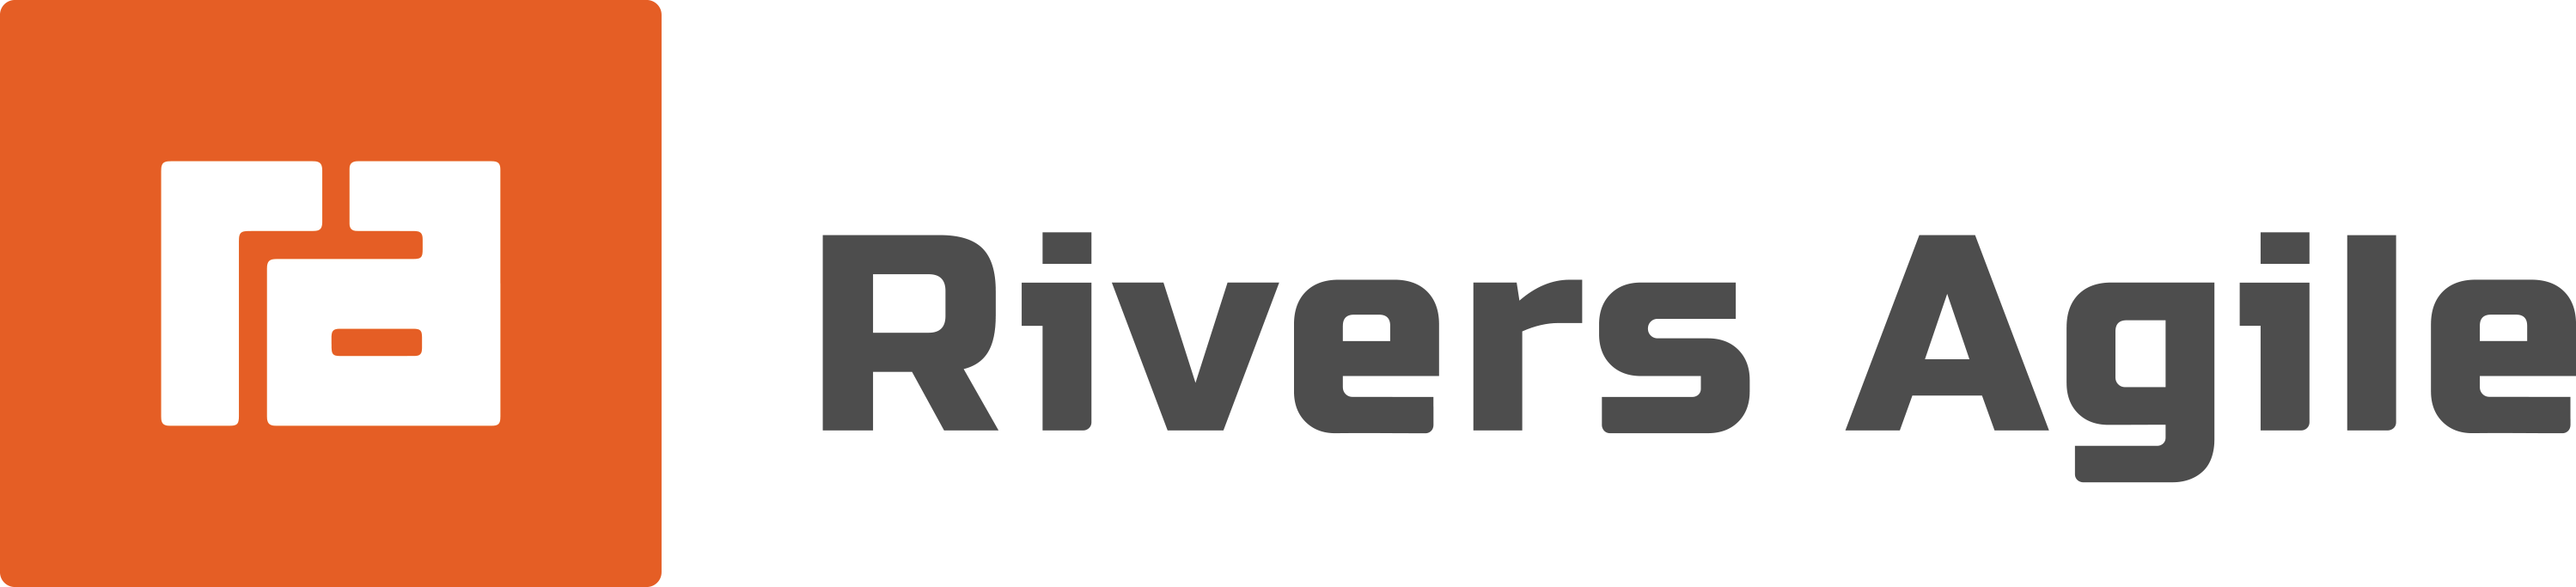 Rivers Agile Logo